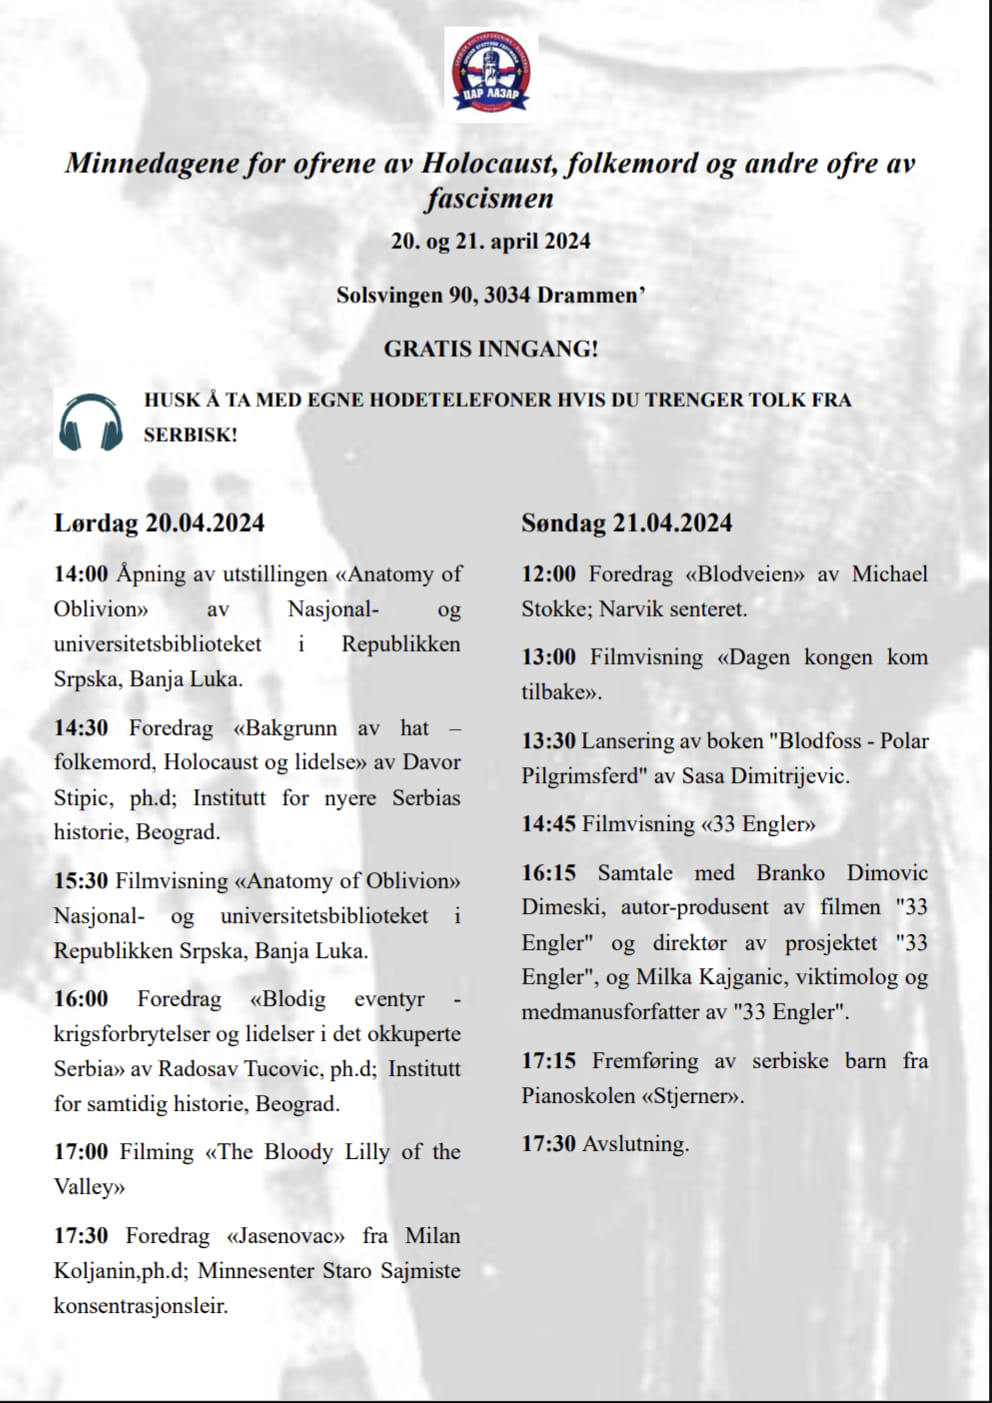 seminar-o-holokaustu-u-organizaciji-drustva-car-lazar-iz-norveskog-dramena-se-odrzava-20-i-21.-aprila